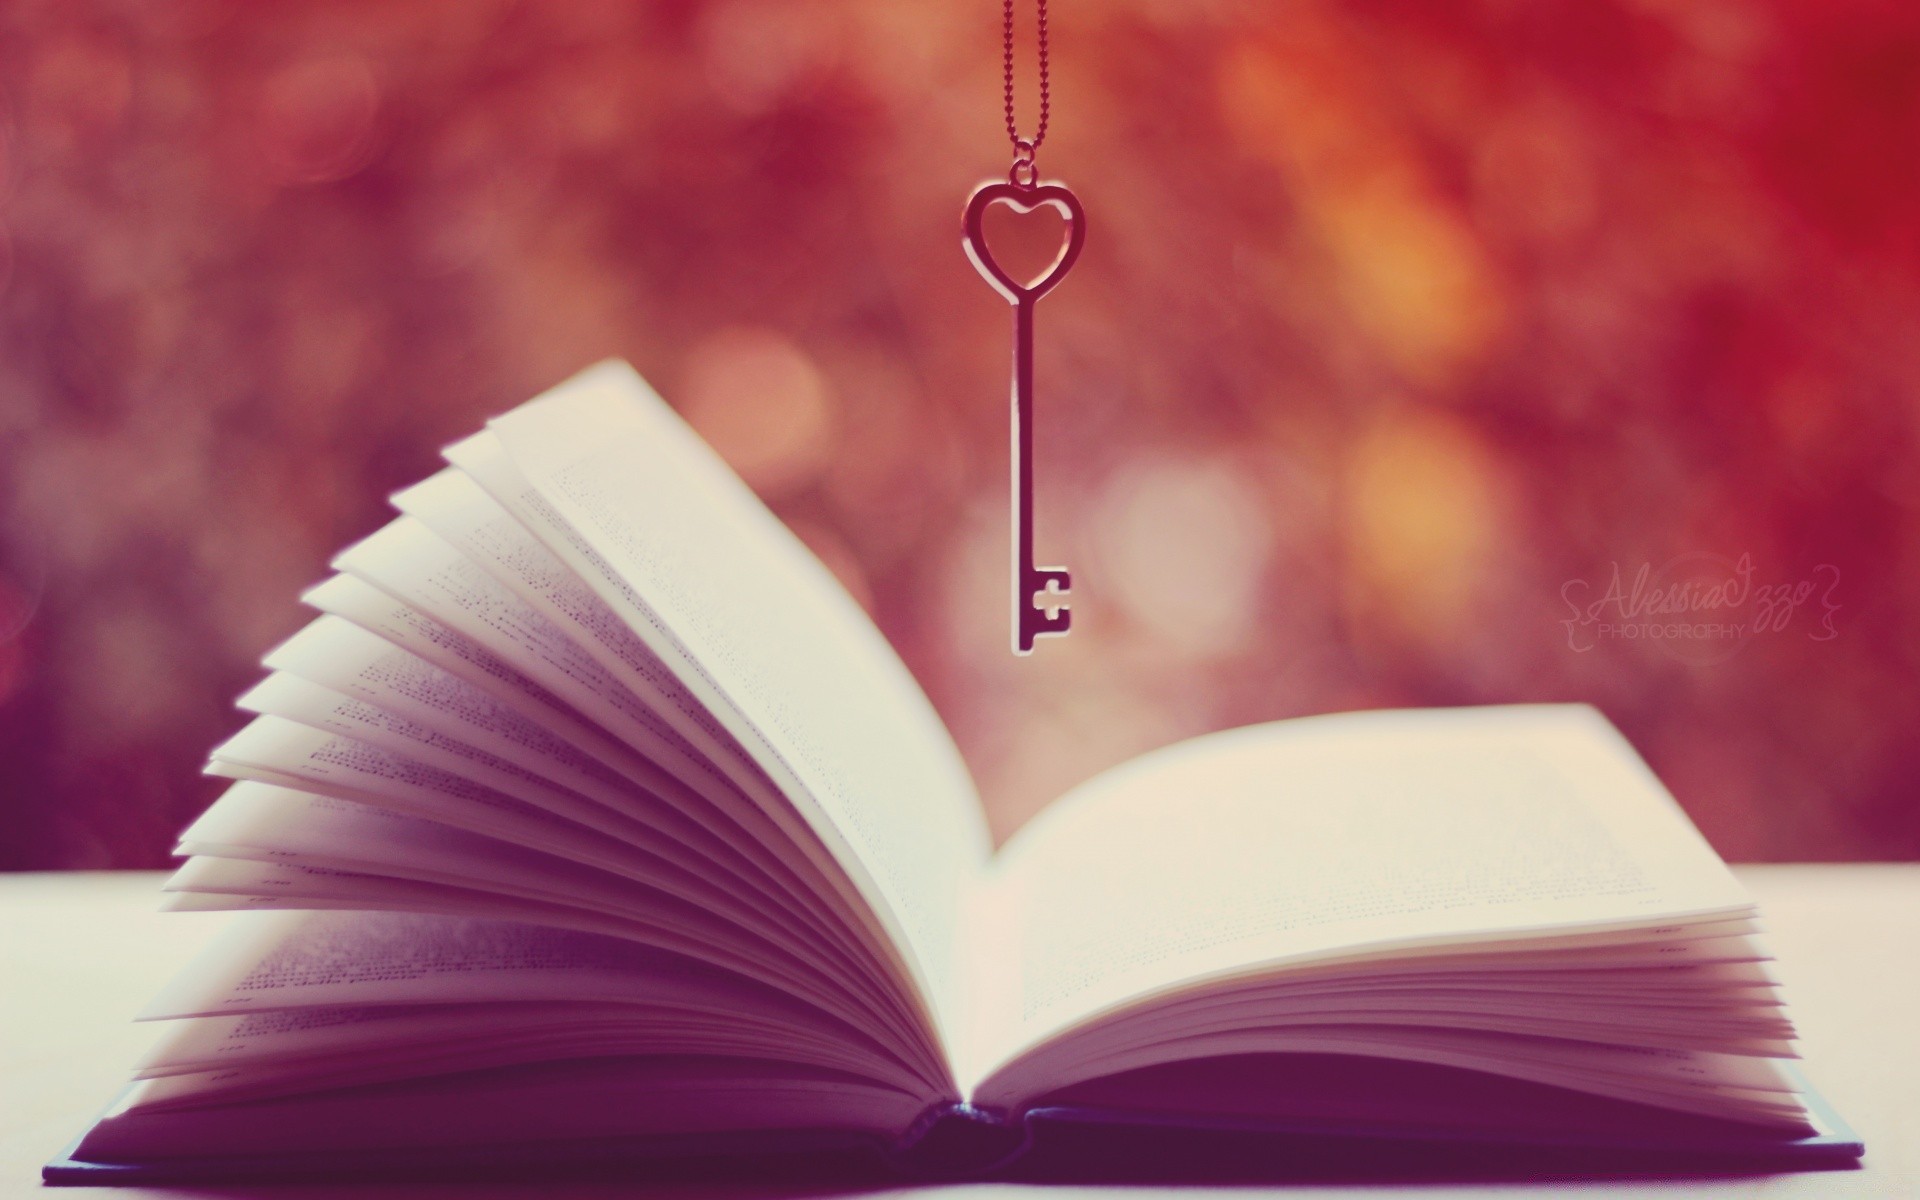 винтаж книга литература знания бумага библиотека мудрость образование страницы любовь сердце исследование